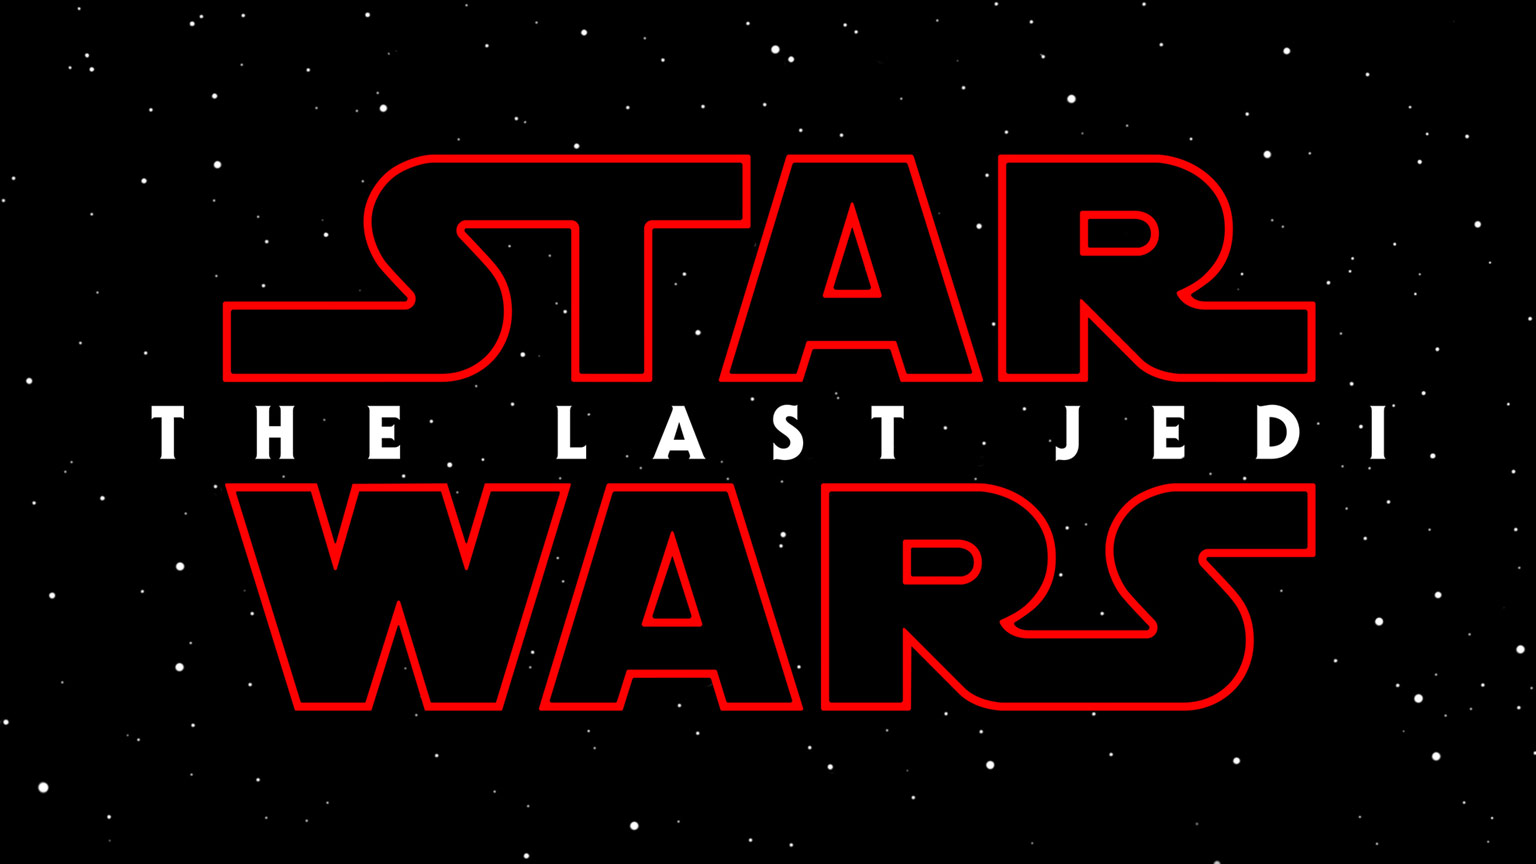 Star Wars: The Last Jedi'dan yeni tanıtım videosu ve görüntüler yayınlandı